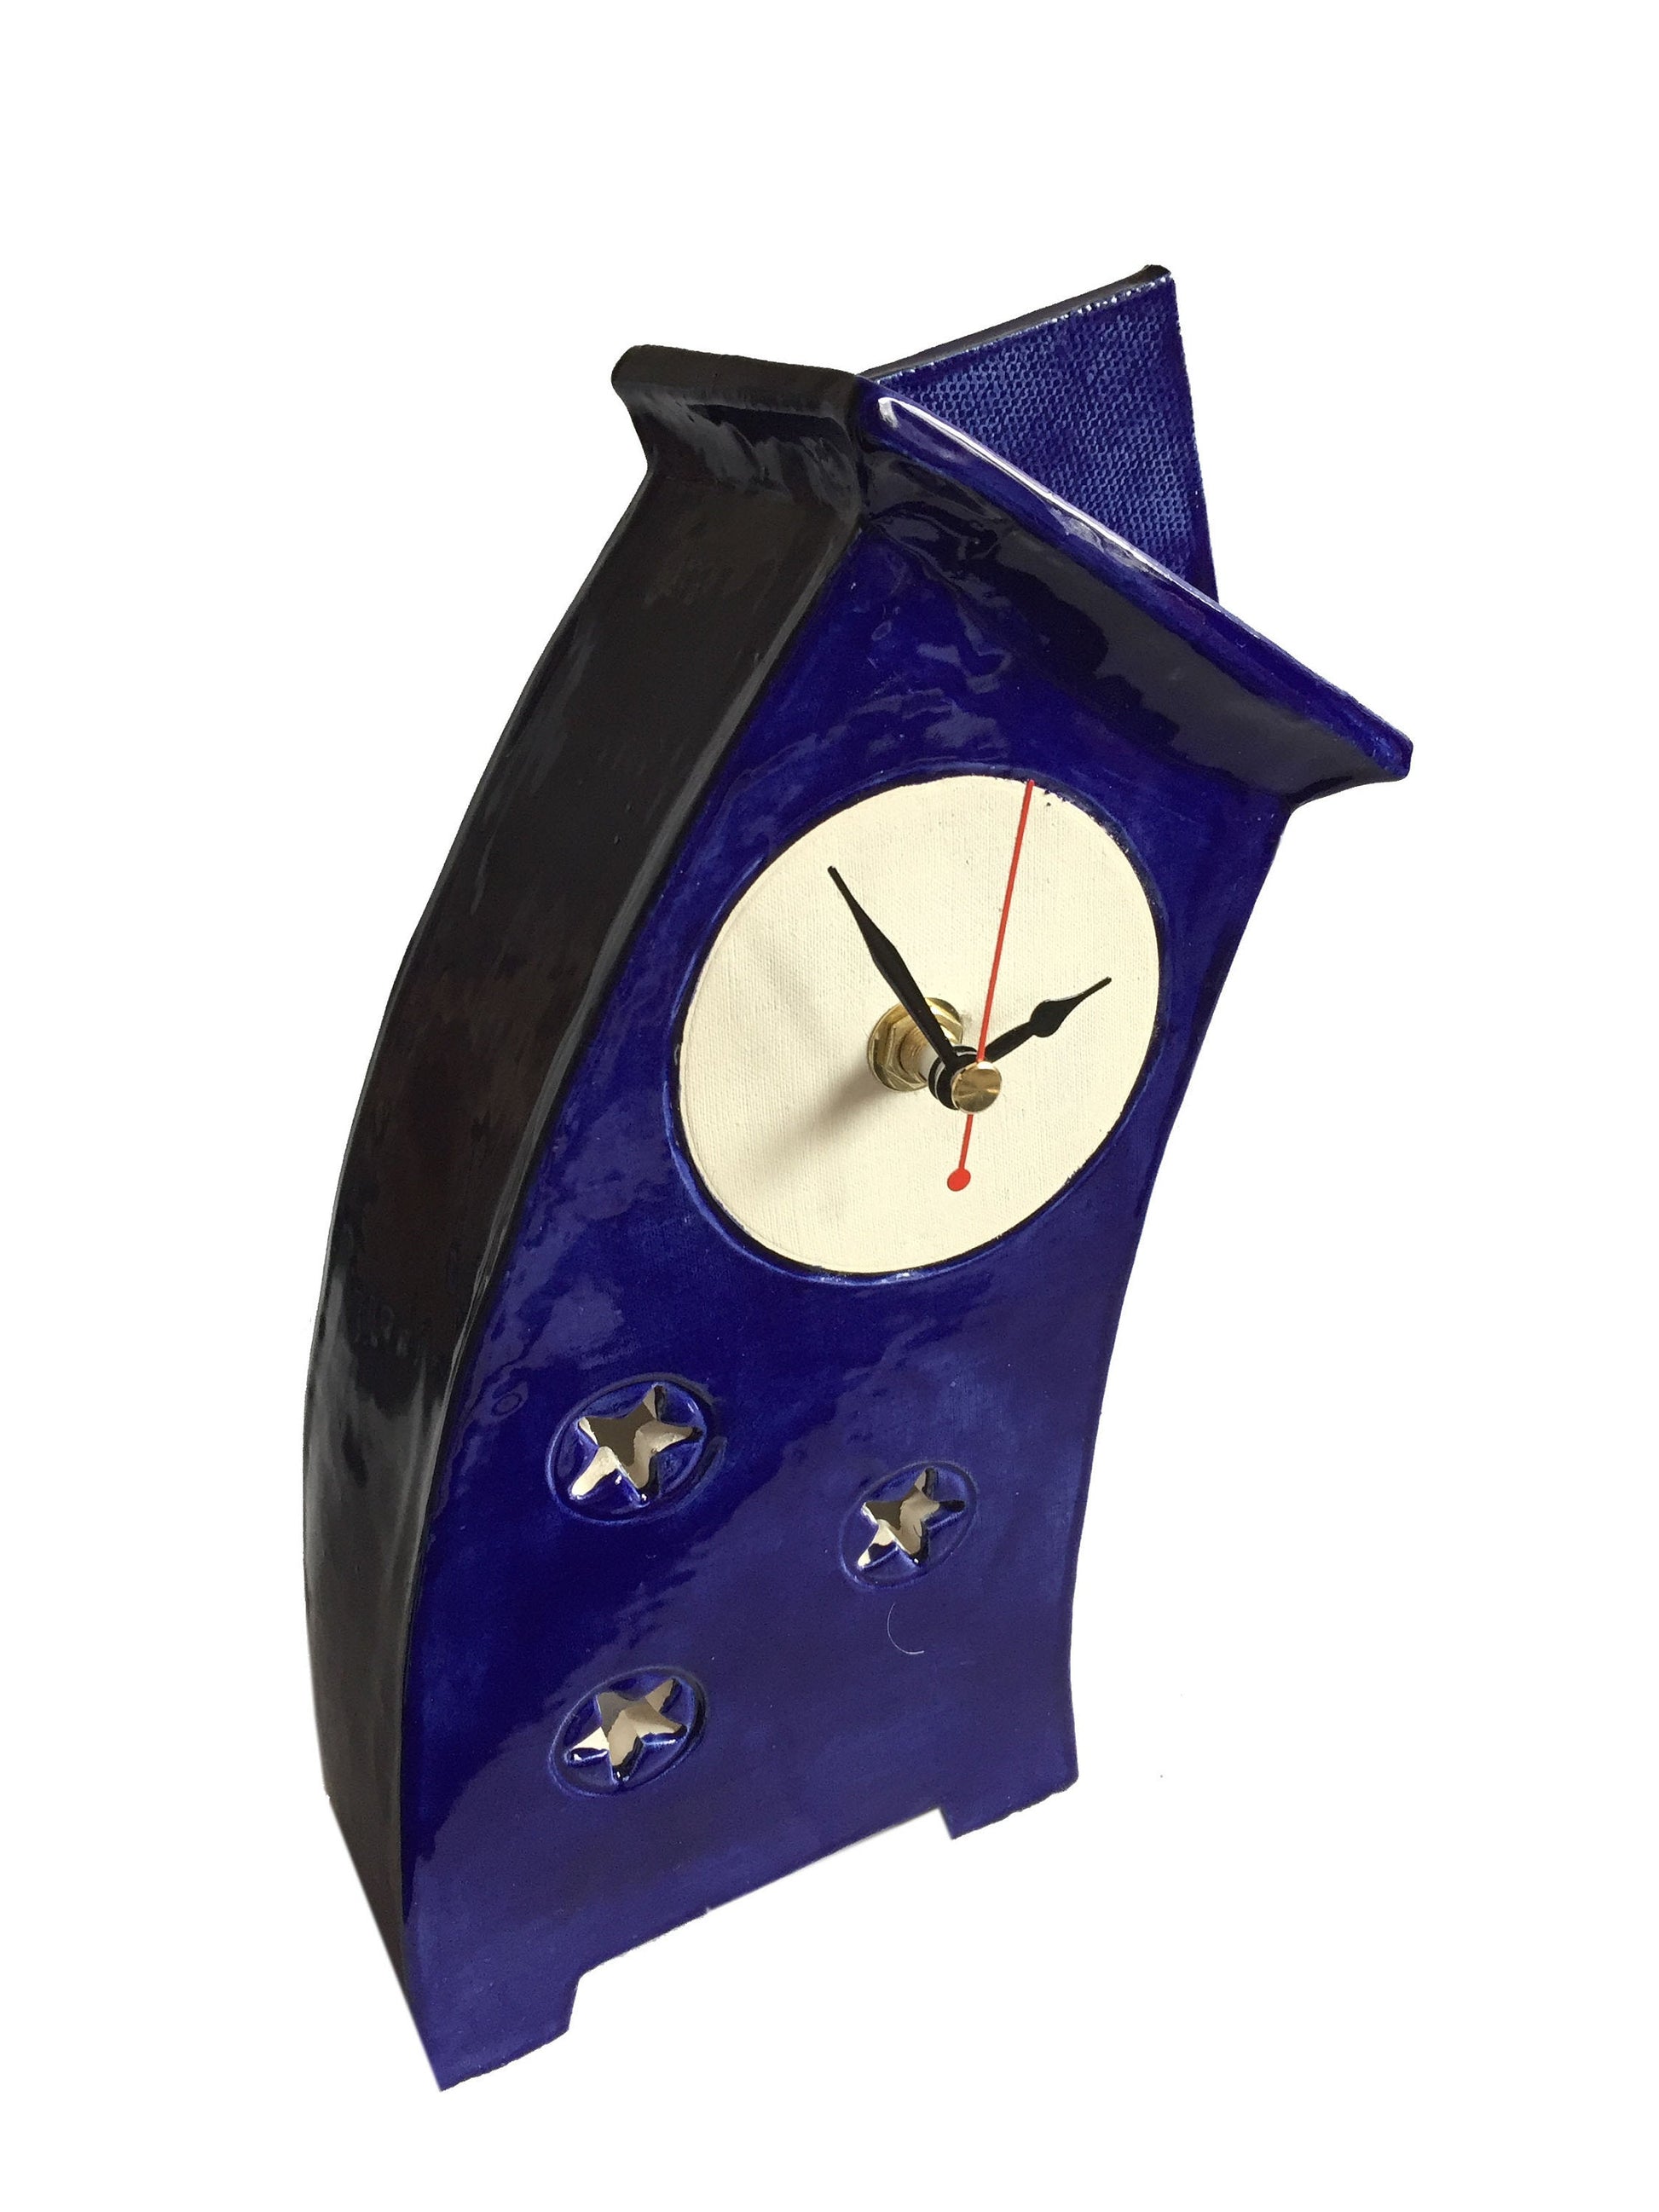 Tabletop Clock, Mantel Clock, Shelf Clock, Wonky Clock - PeterBowenArt